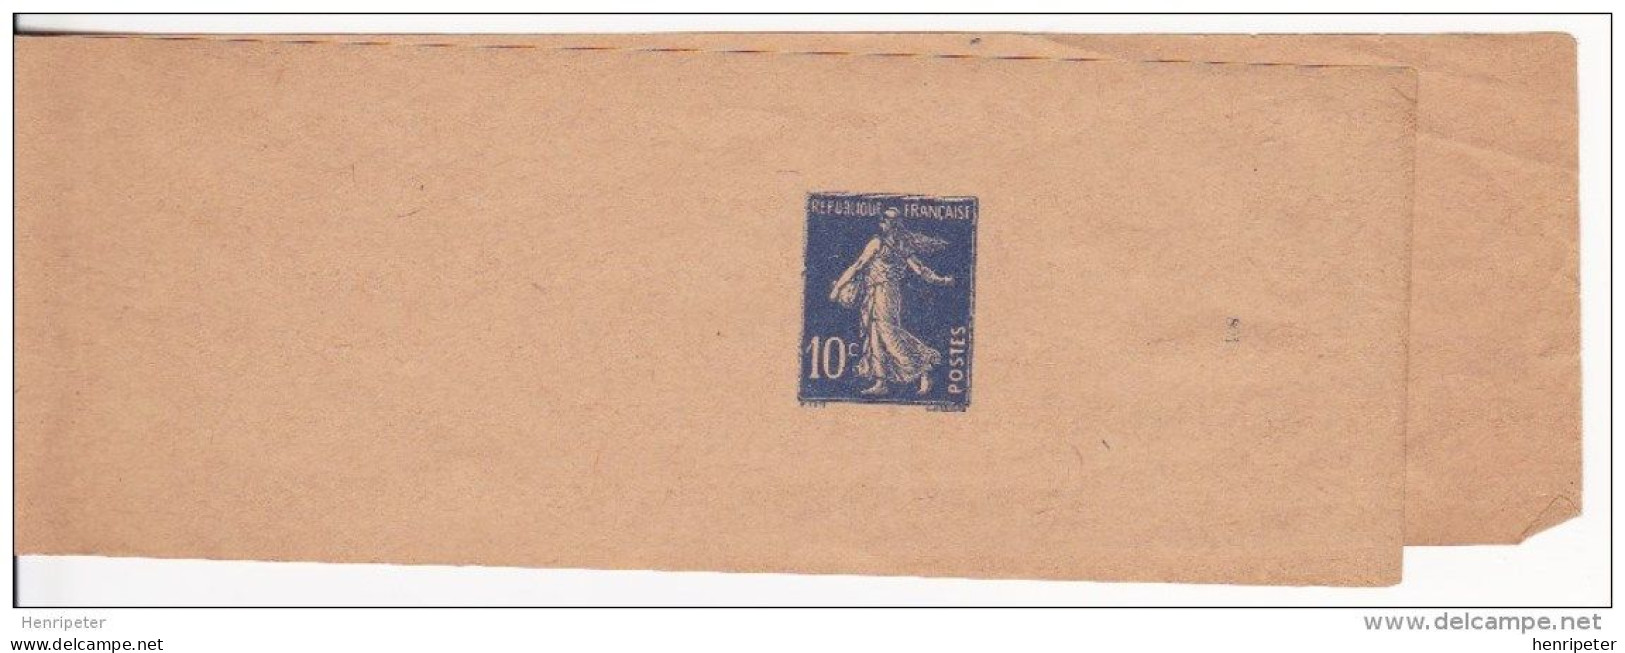 279-BJ1 (Yvert) Neuf** Sur Bande Pour Journaux - Entier Postal Type Semeuse à Fond Plein - France 1932-37 - Newspaper Bands